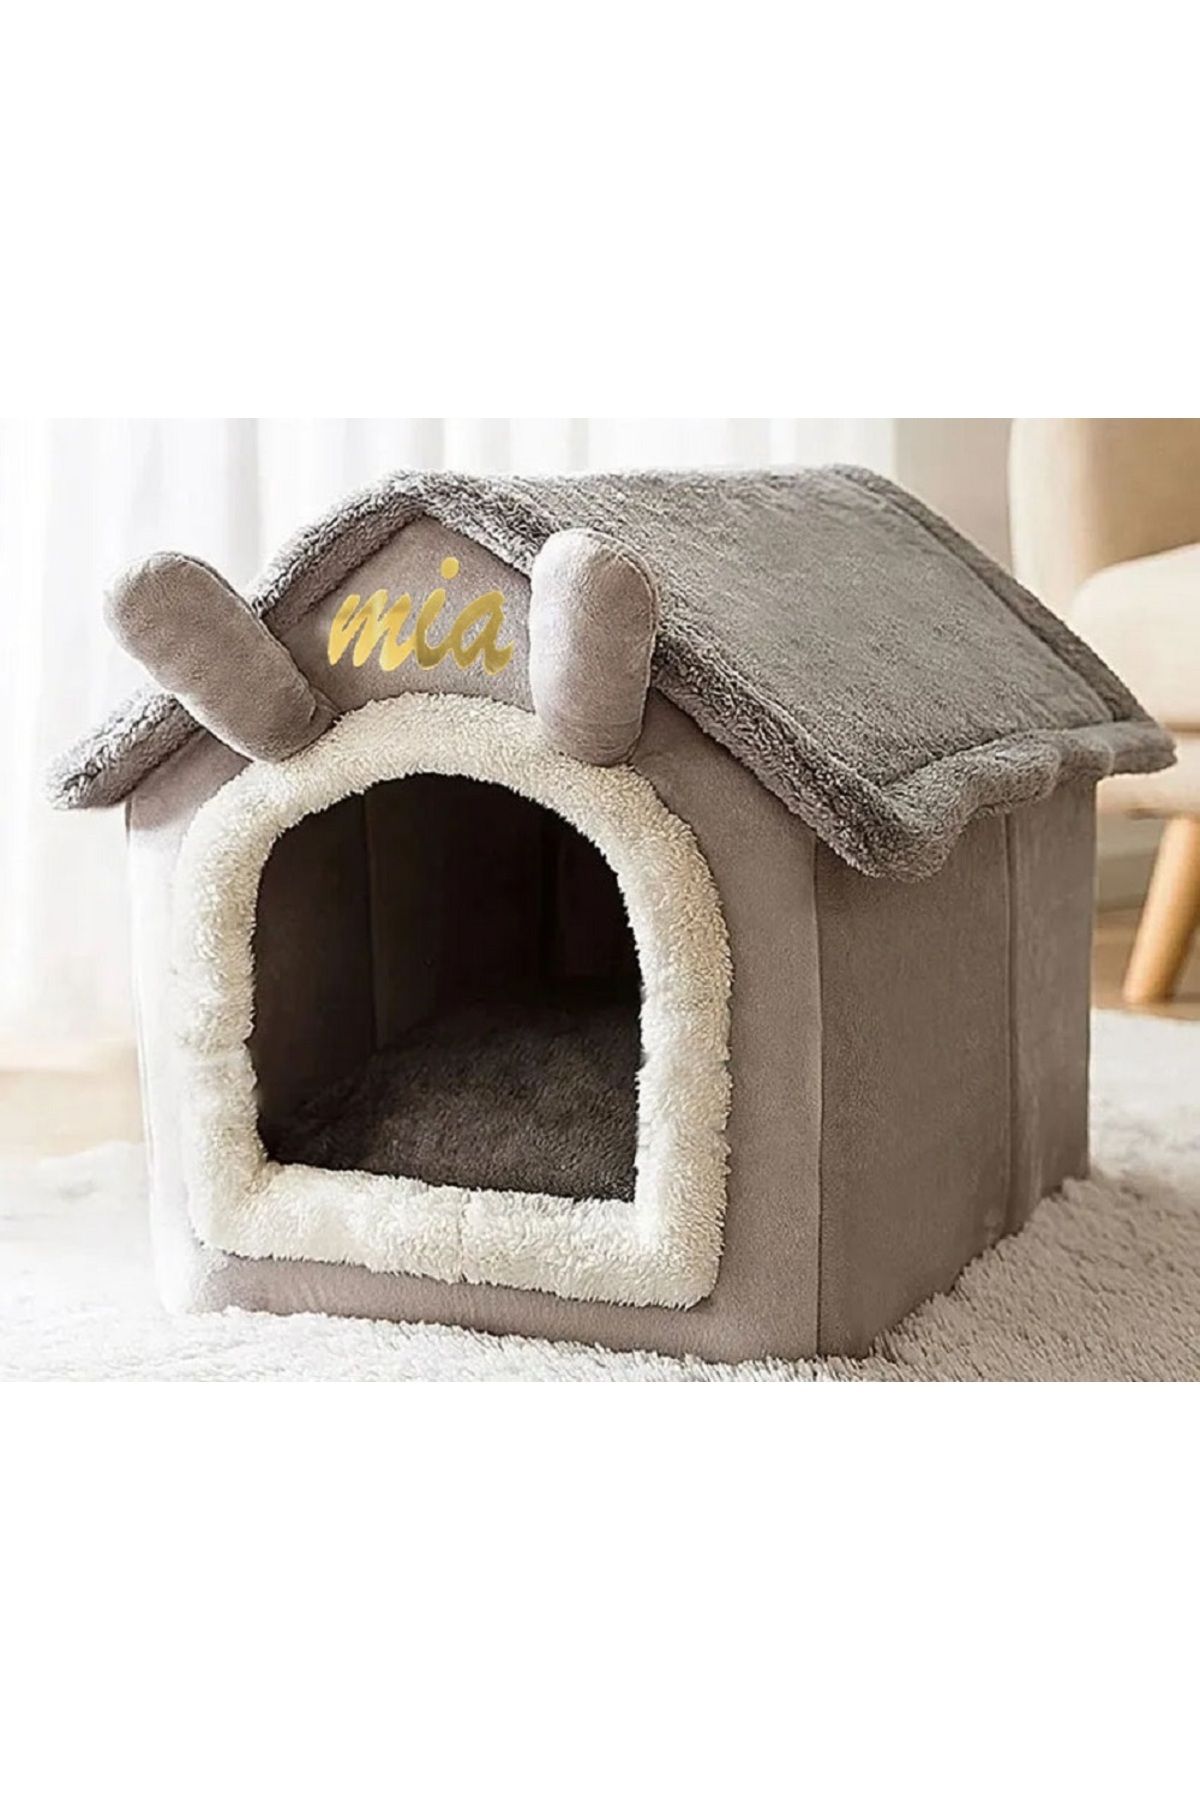 pericat petshop pericat villa kedi & köpek evi yatağı özel tasarım hediyeli